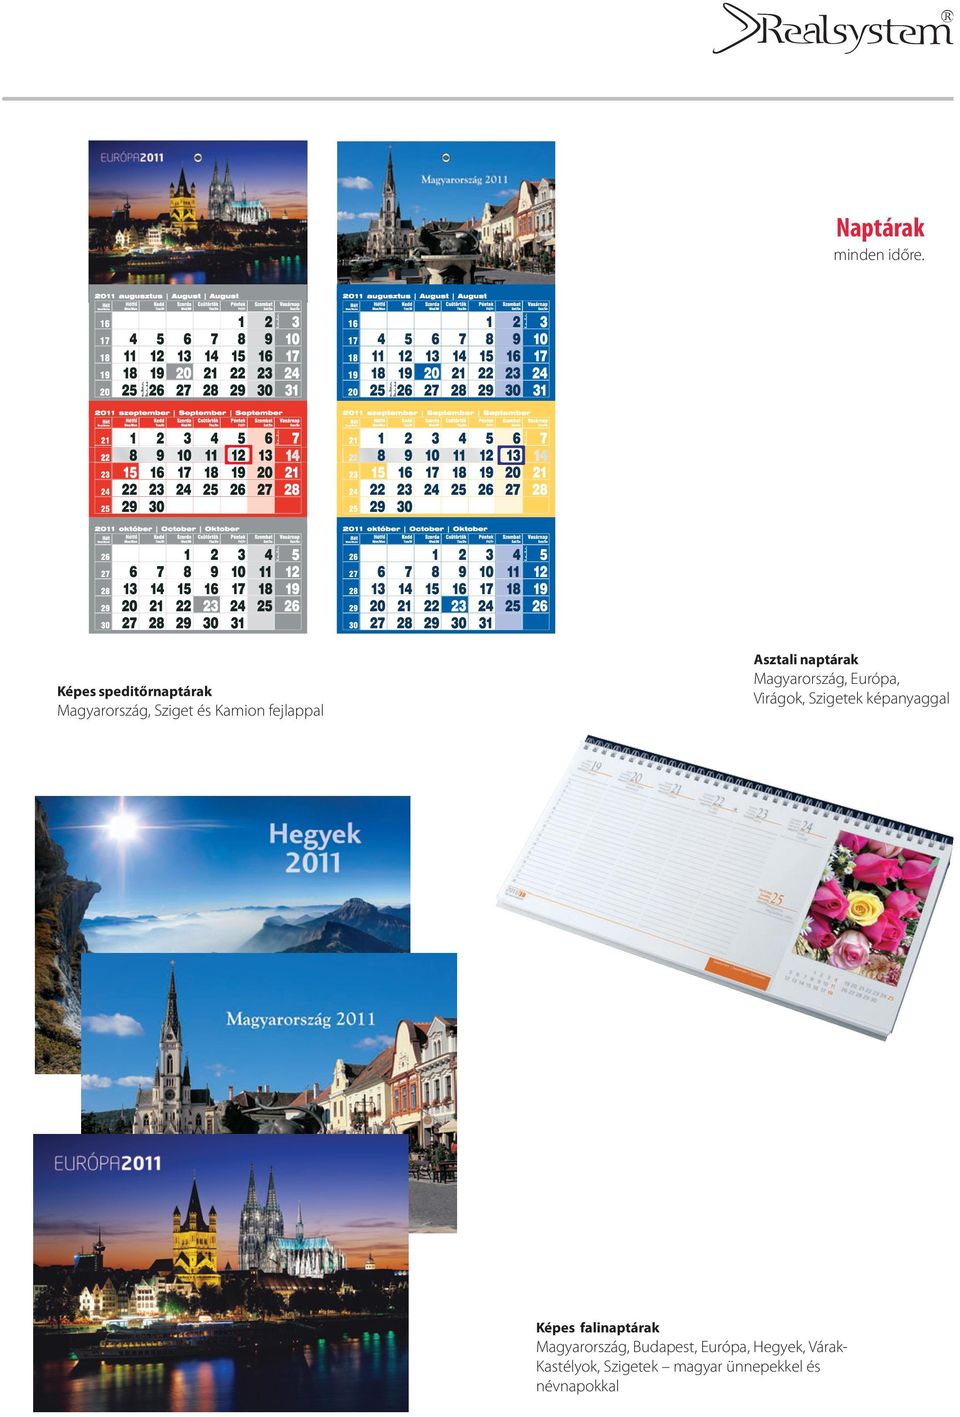 Asztali naptárak Magyarország, Európa, Virágok, Szigetek képanyaggal